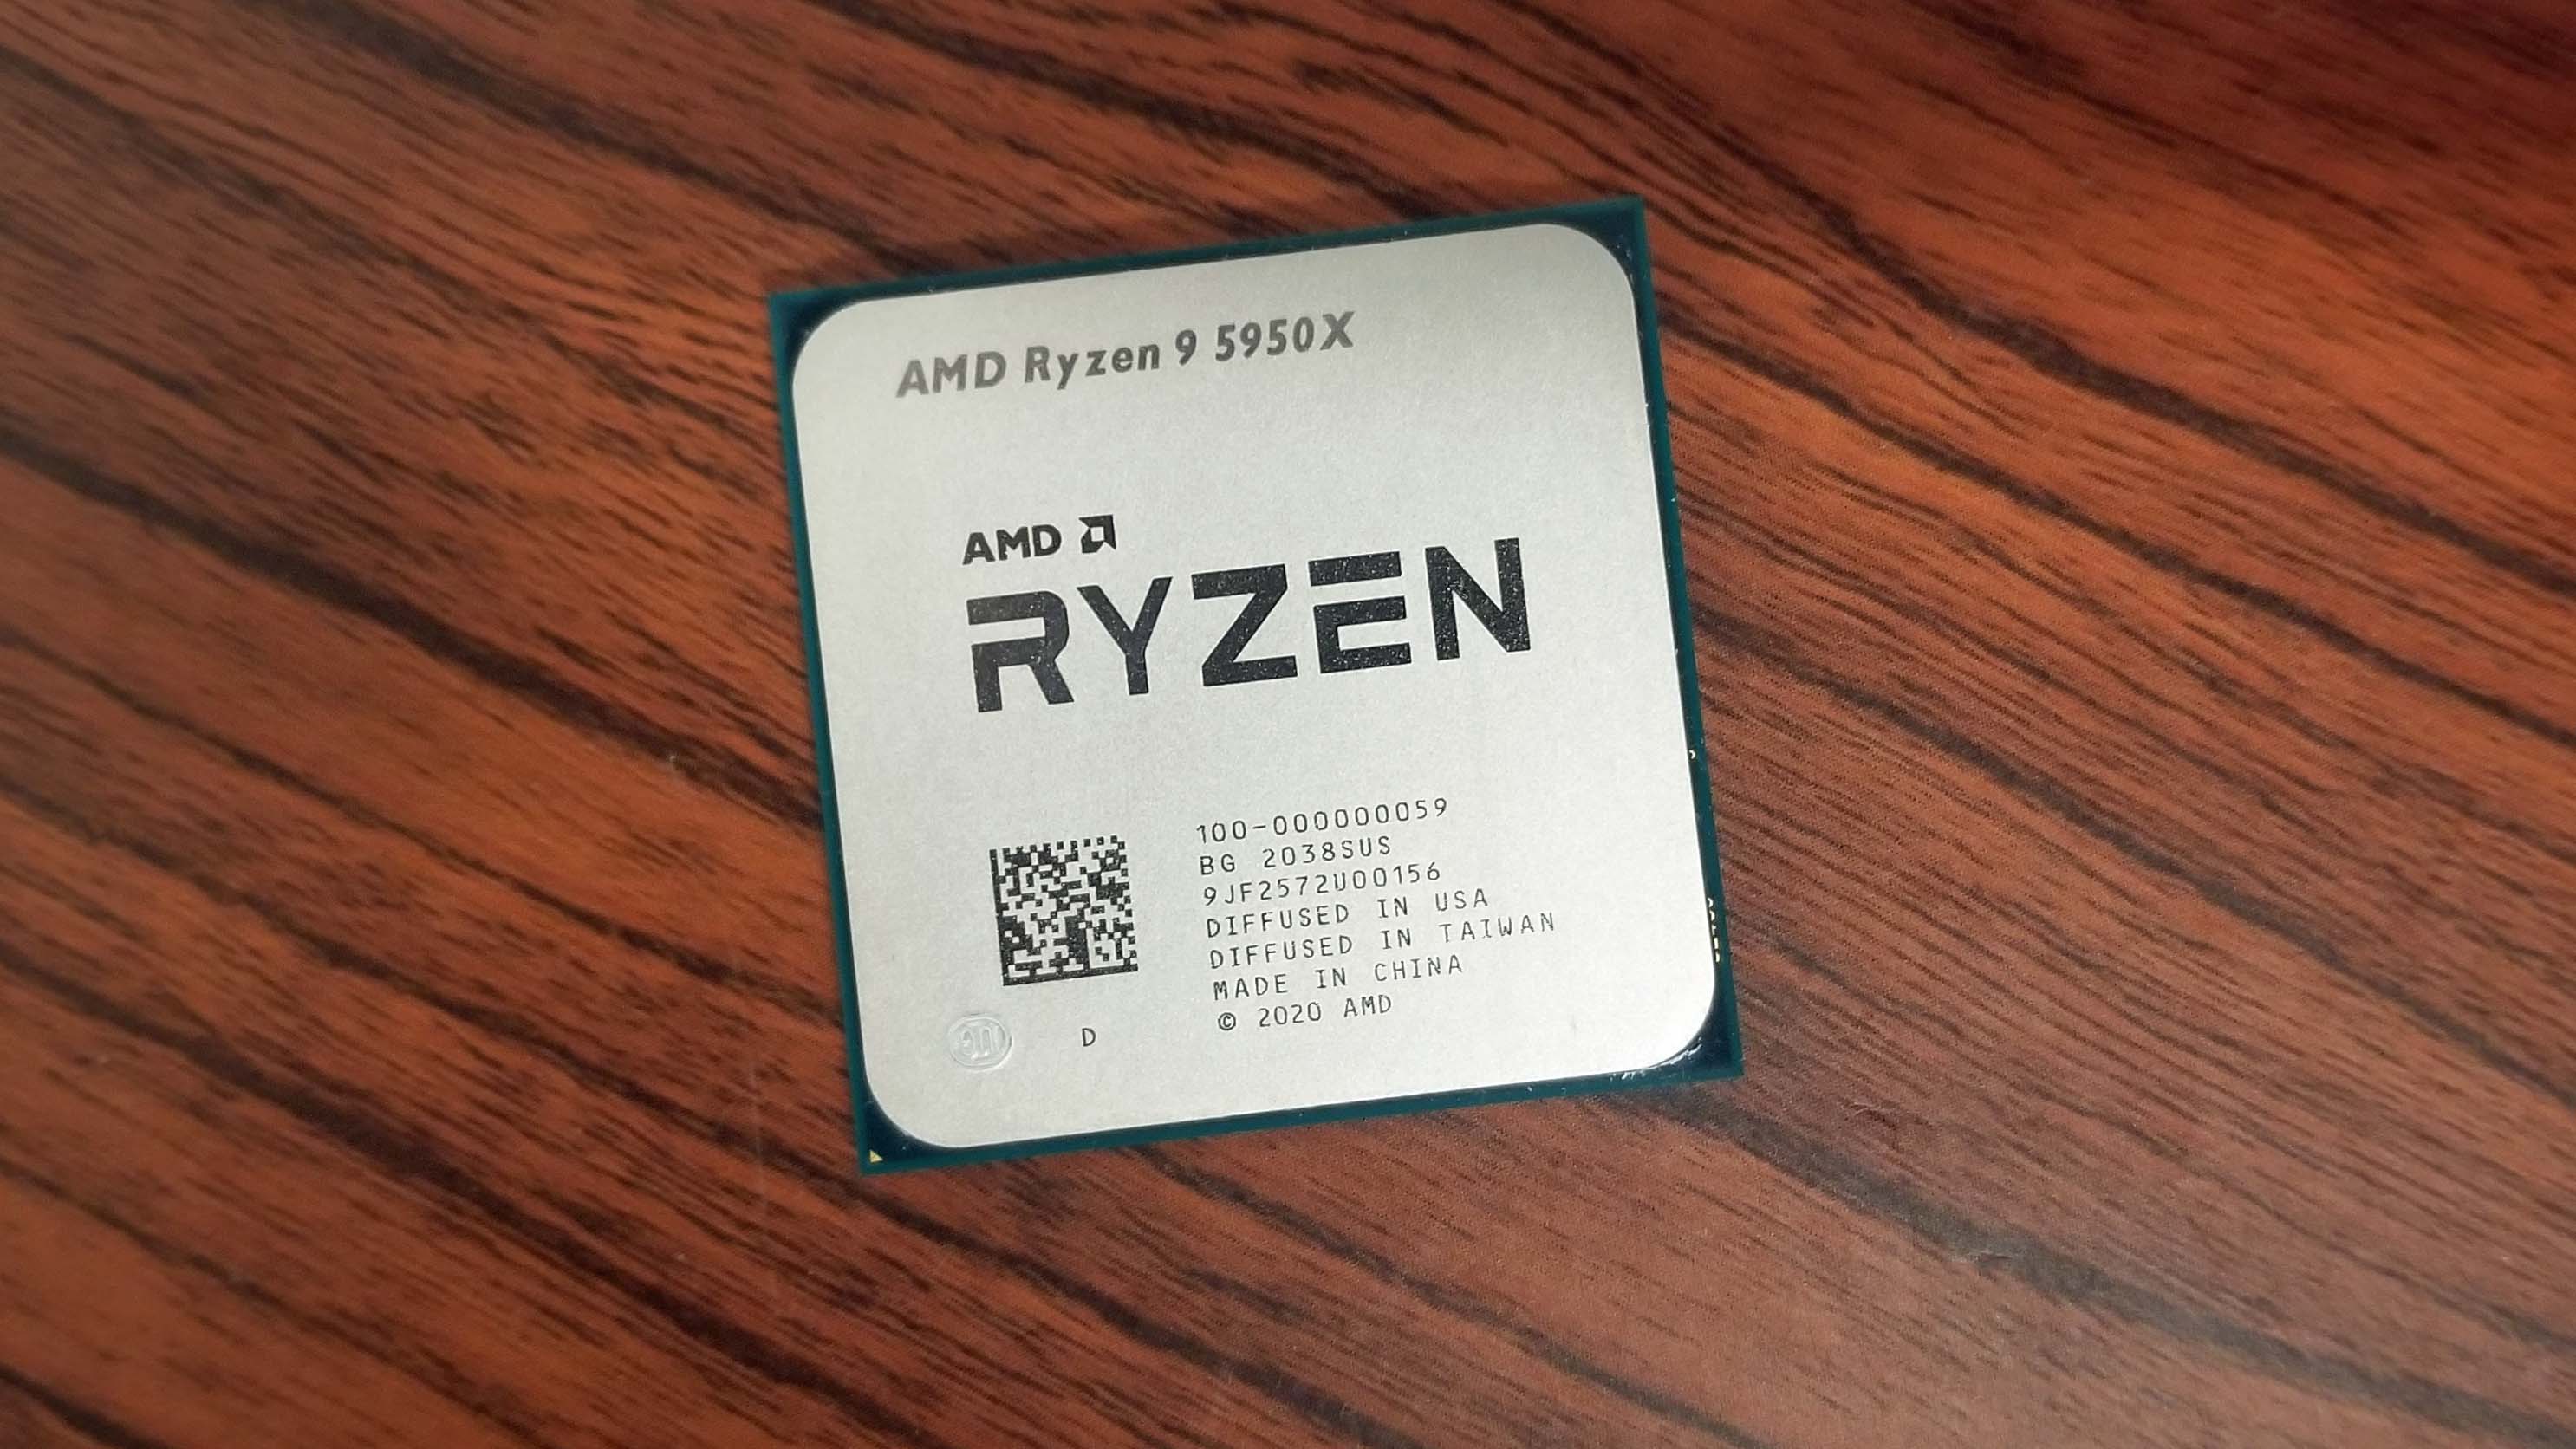 AMD Ryzen 9 5950X and Ryzen 9 5900X Adobe, SPECworkstation 3 